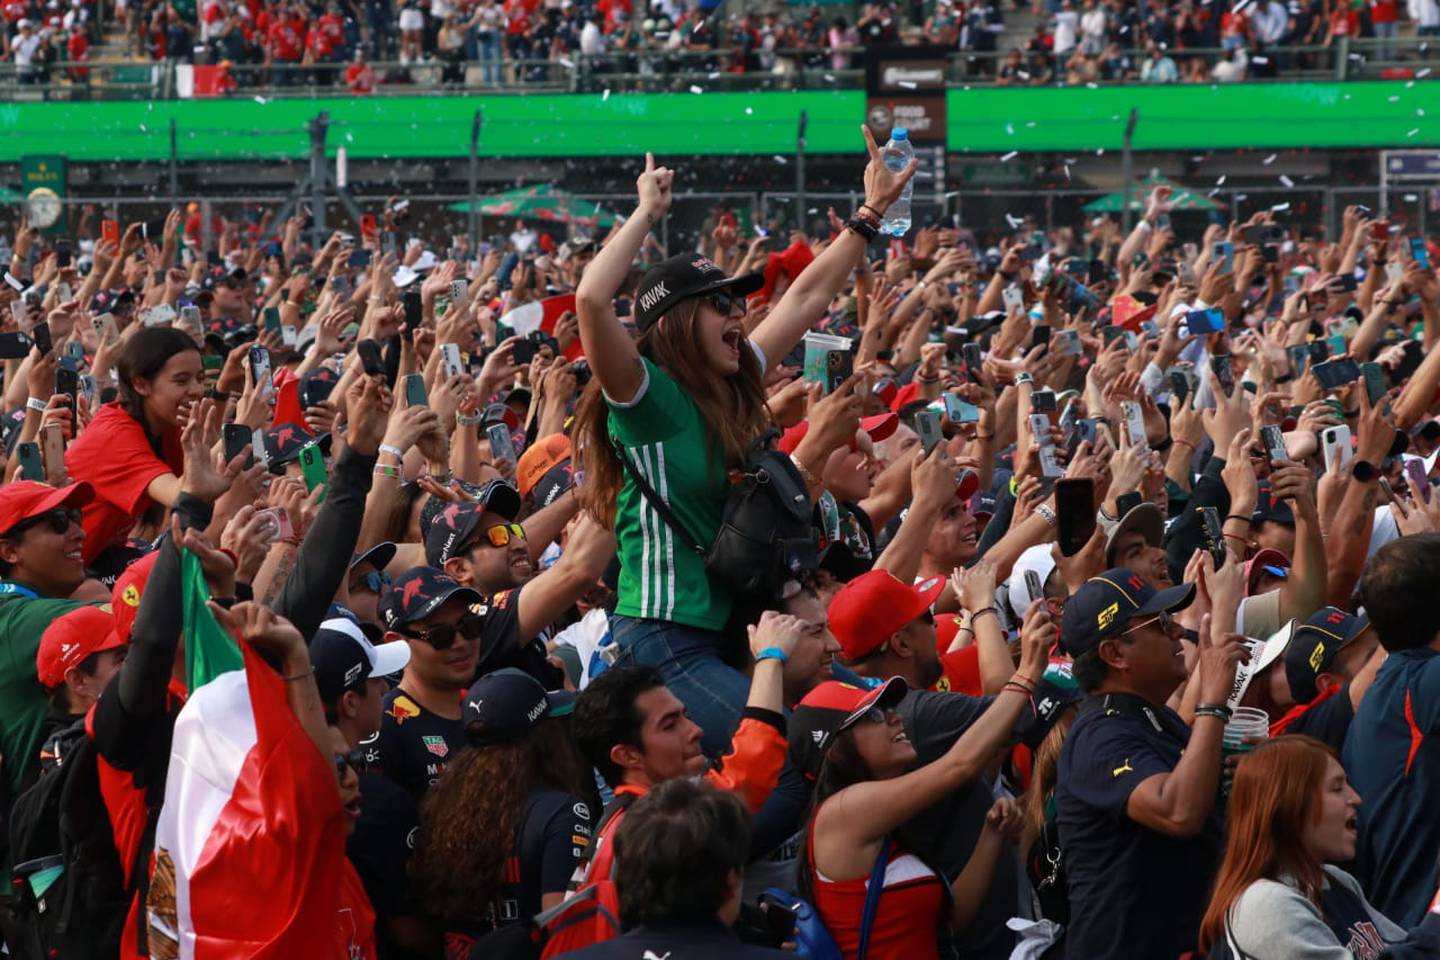 La afición mexicana festejó el tercer lugar de Checo como un triunfo